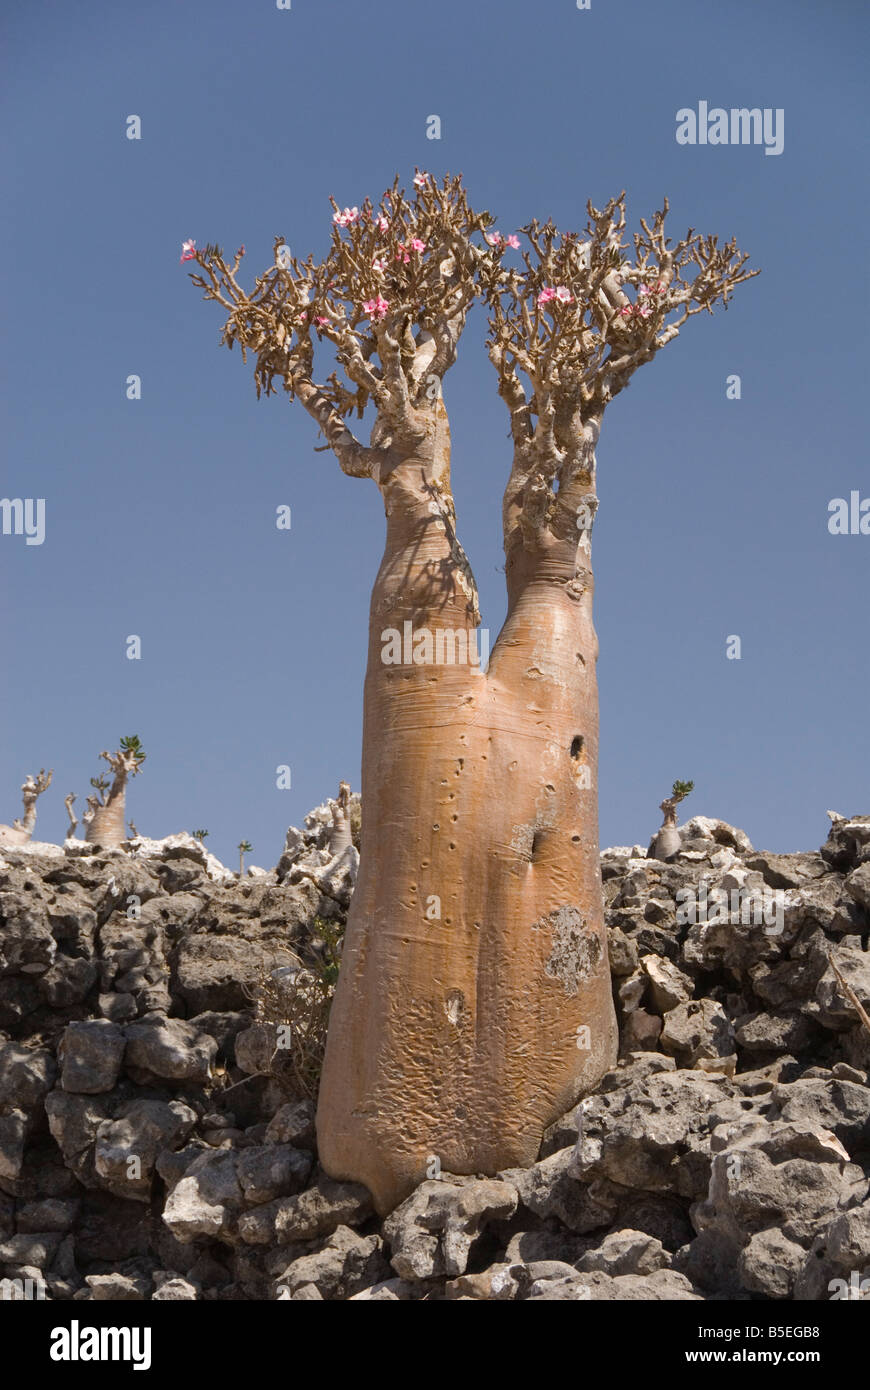 Arbre bouteille d'Adenium obesum rose du désert endémique à l'île centrale du plateau Diksam Île de Socotra Yémen Moyen-orient Banque D'Images